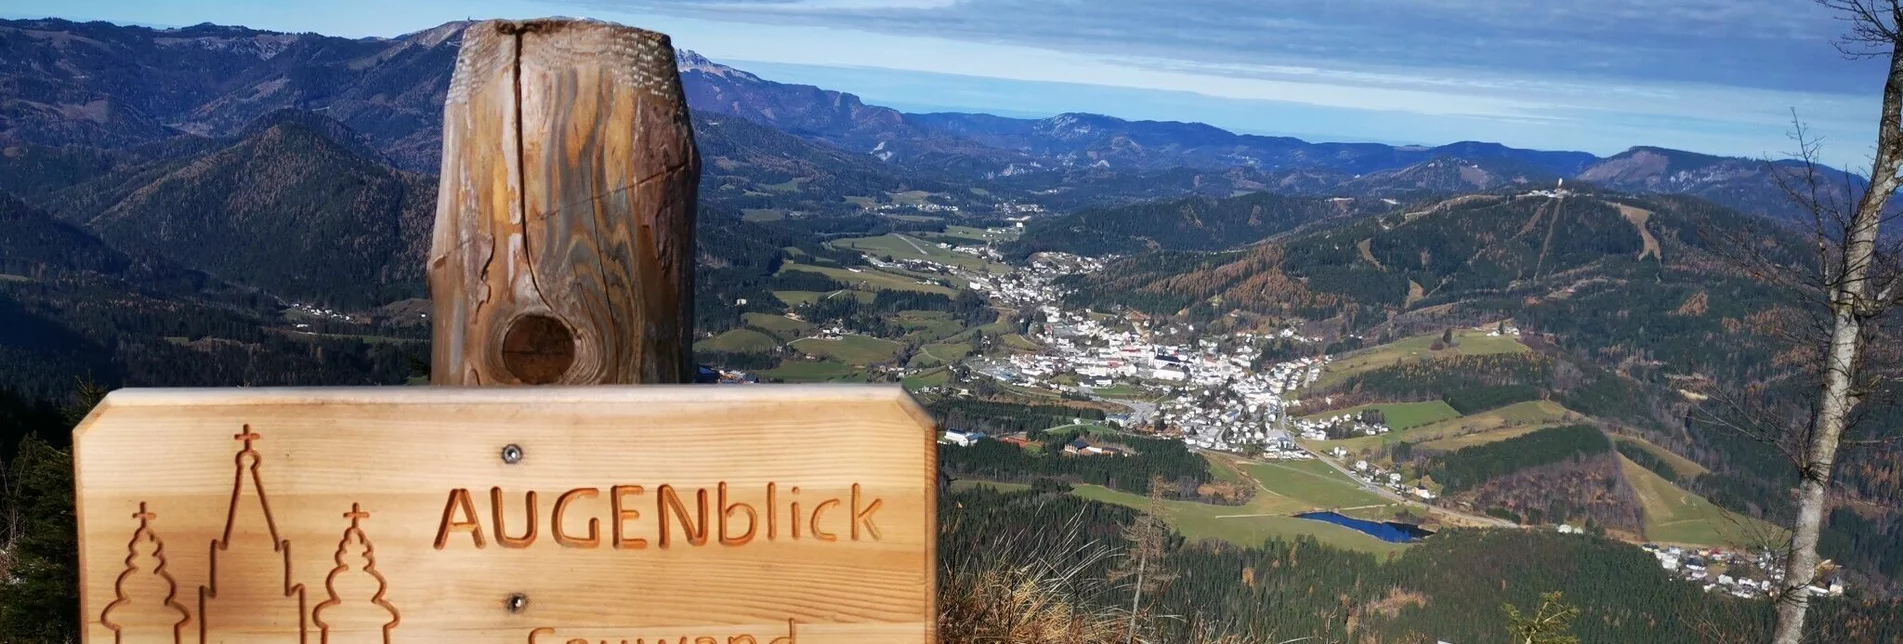 Wanderung Mariazeller AUGENblicke: Sauwand - Touren-Impression #1 | © TV Hochsteiermark